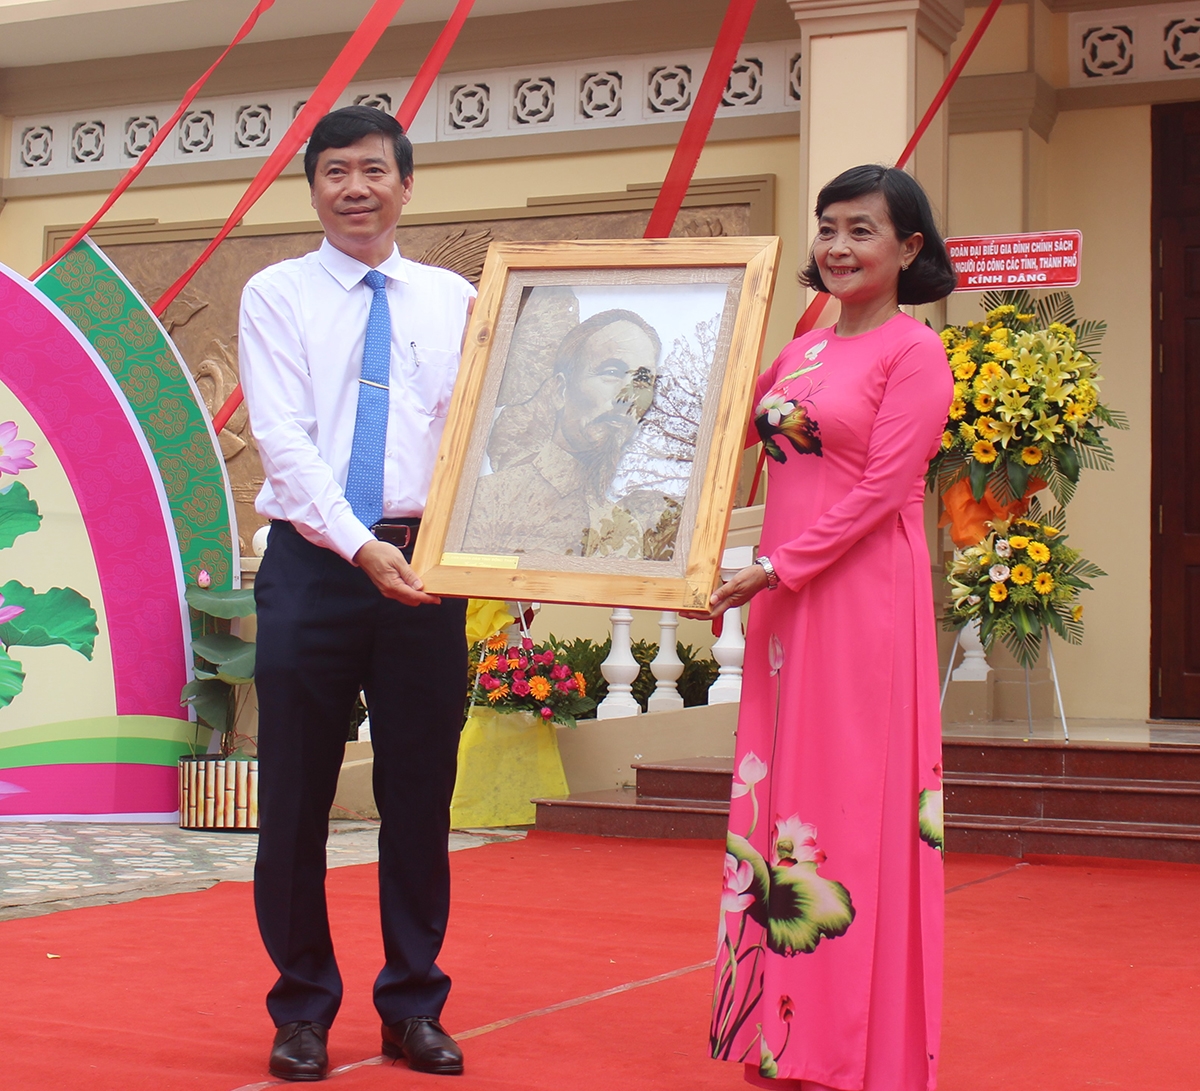 Ông Phạm Thiện Nghĩa Chủ tịch UBND tỉnh Đồng Tháp tặng ảnh lưu niệm cho khu Di tích Nguyễn Sinh Sắc